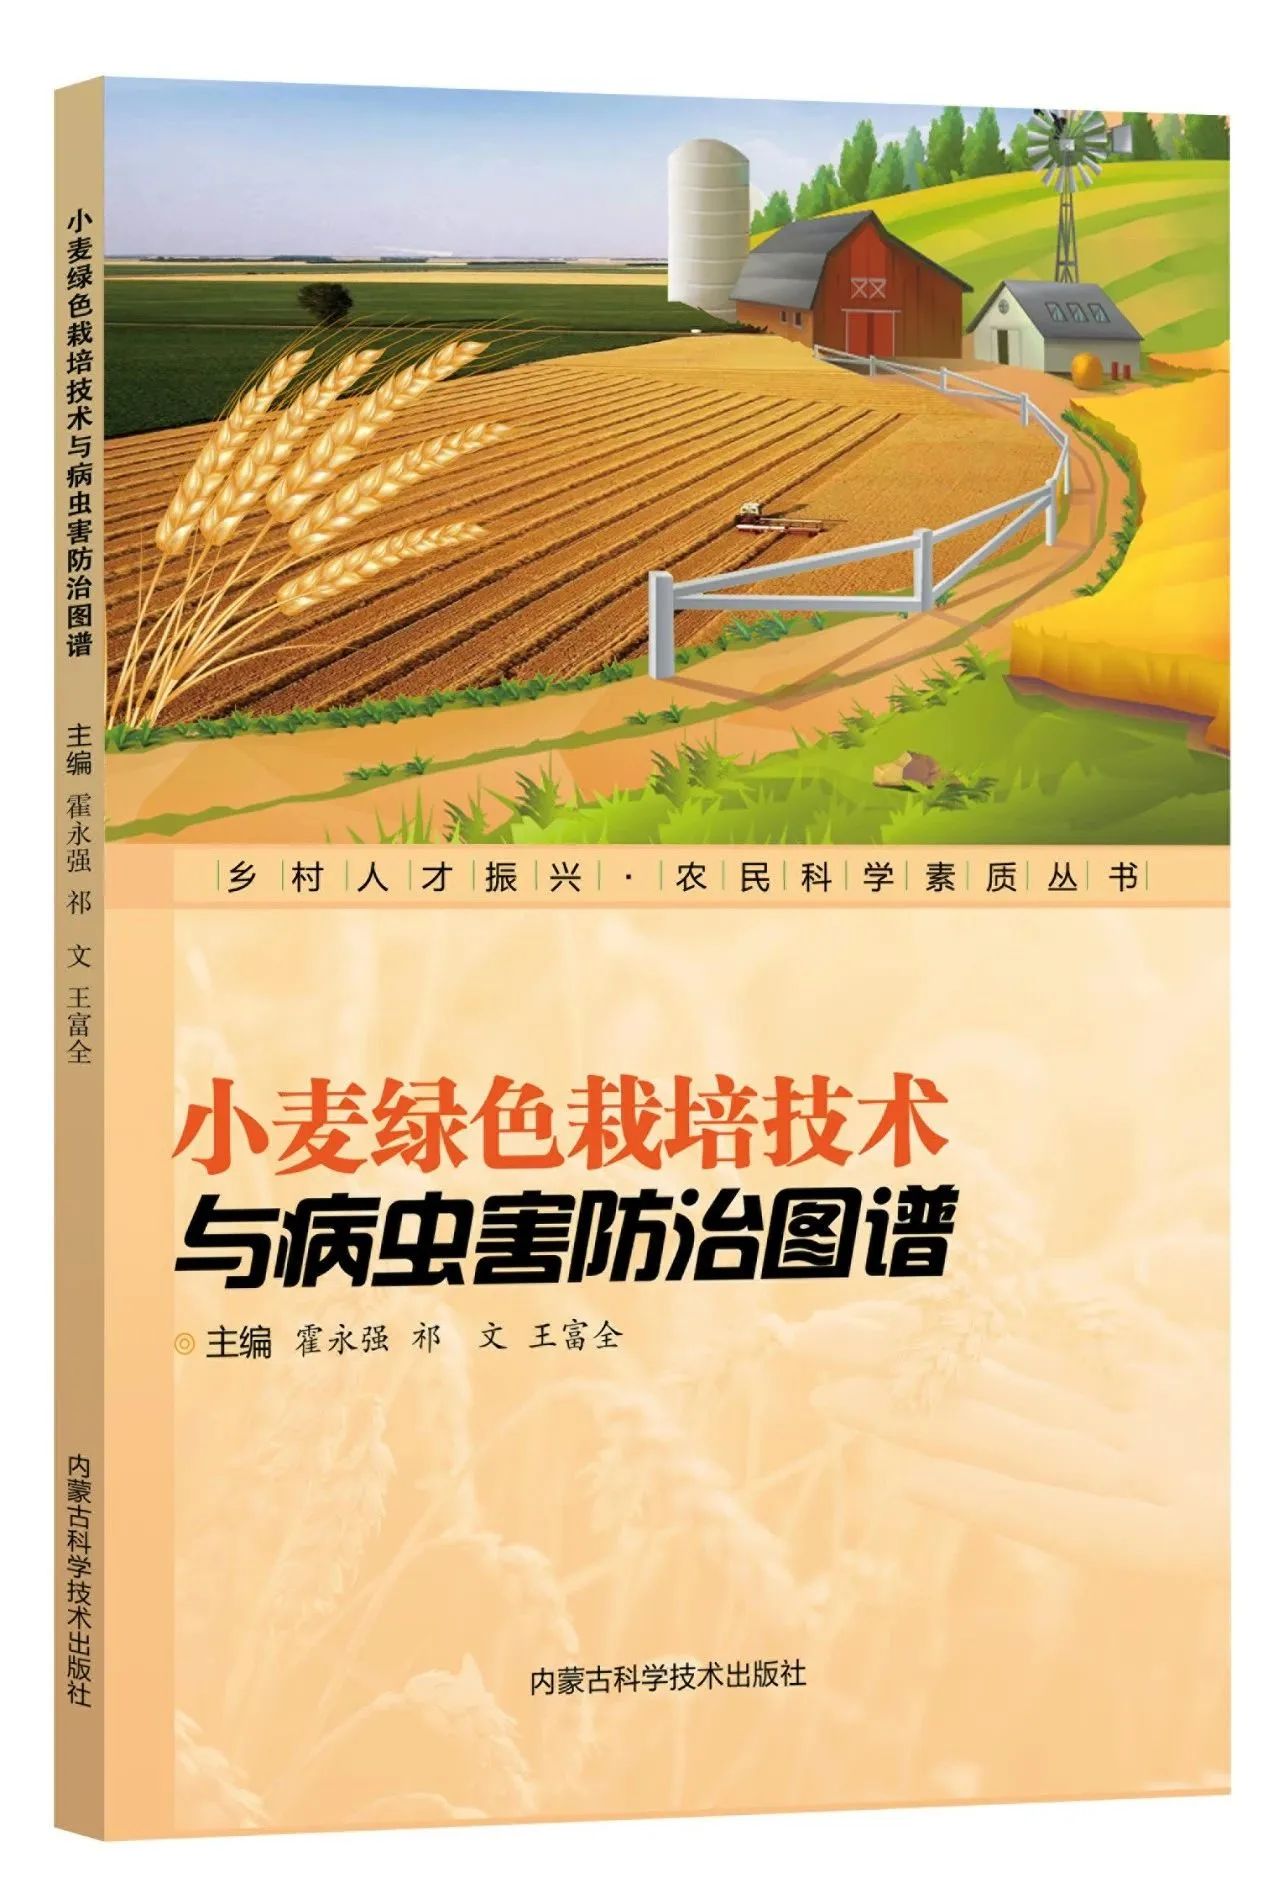  《乡村人才振兴 • 农民科学素质丛书》丨《小麦绿色栽培技术与病虫害防治图谱》